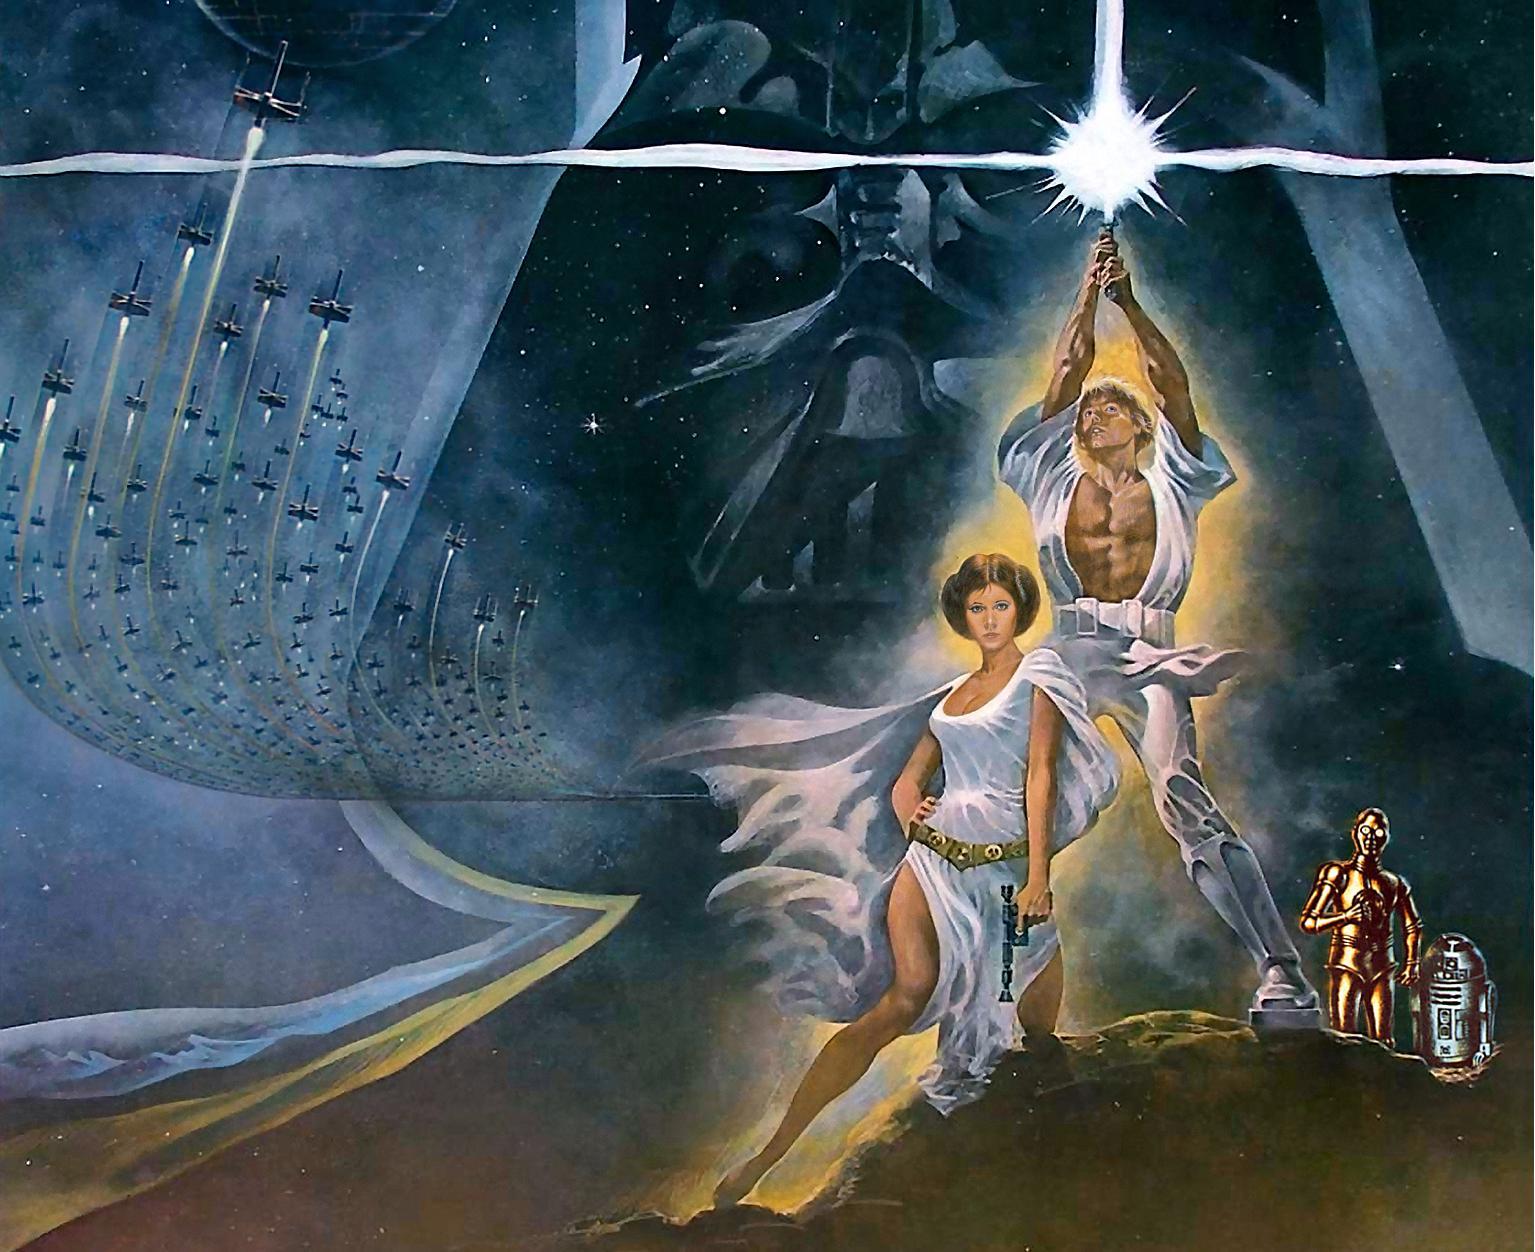 Star Wars Episode IV: A New Hope Wallpaper. Star Wars Episode